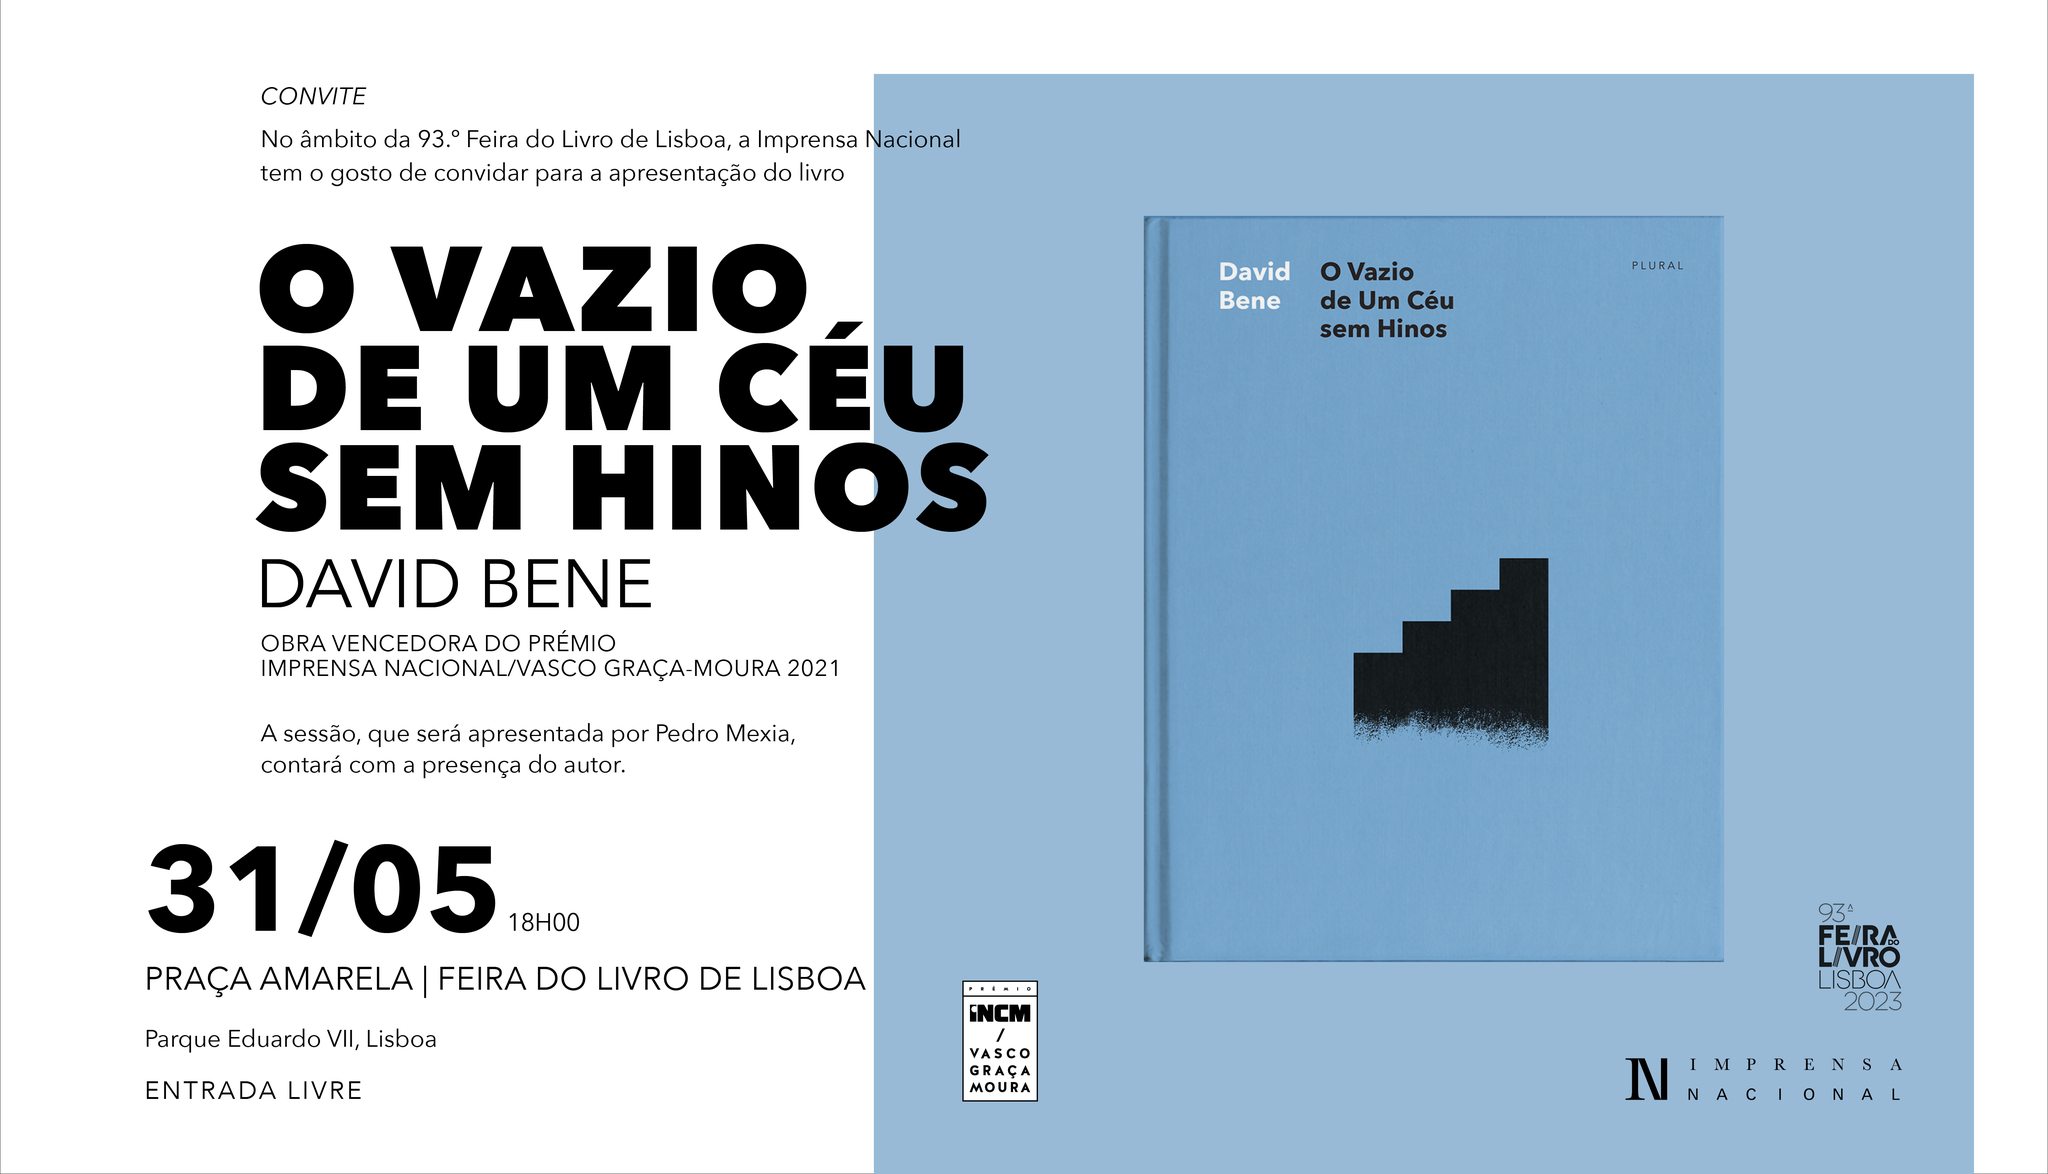 93.ª Feira do Livro de Lisboa | O Vazio de Um Céu Sem Hinos, de David Bene